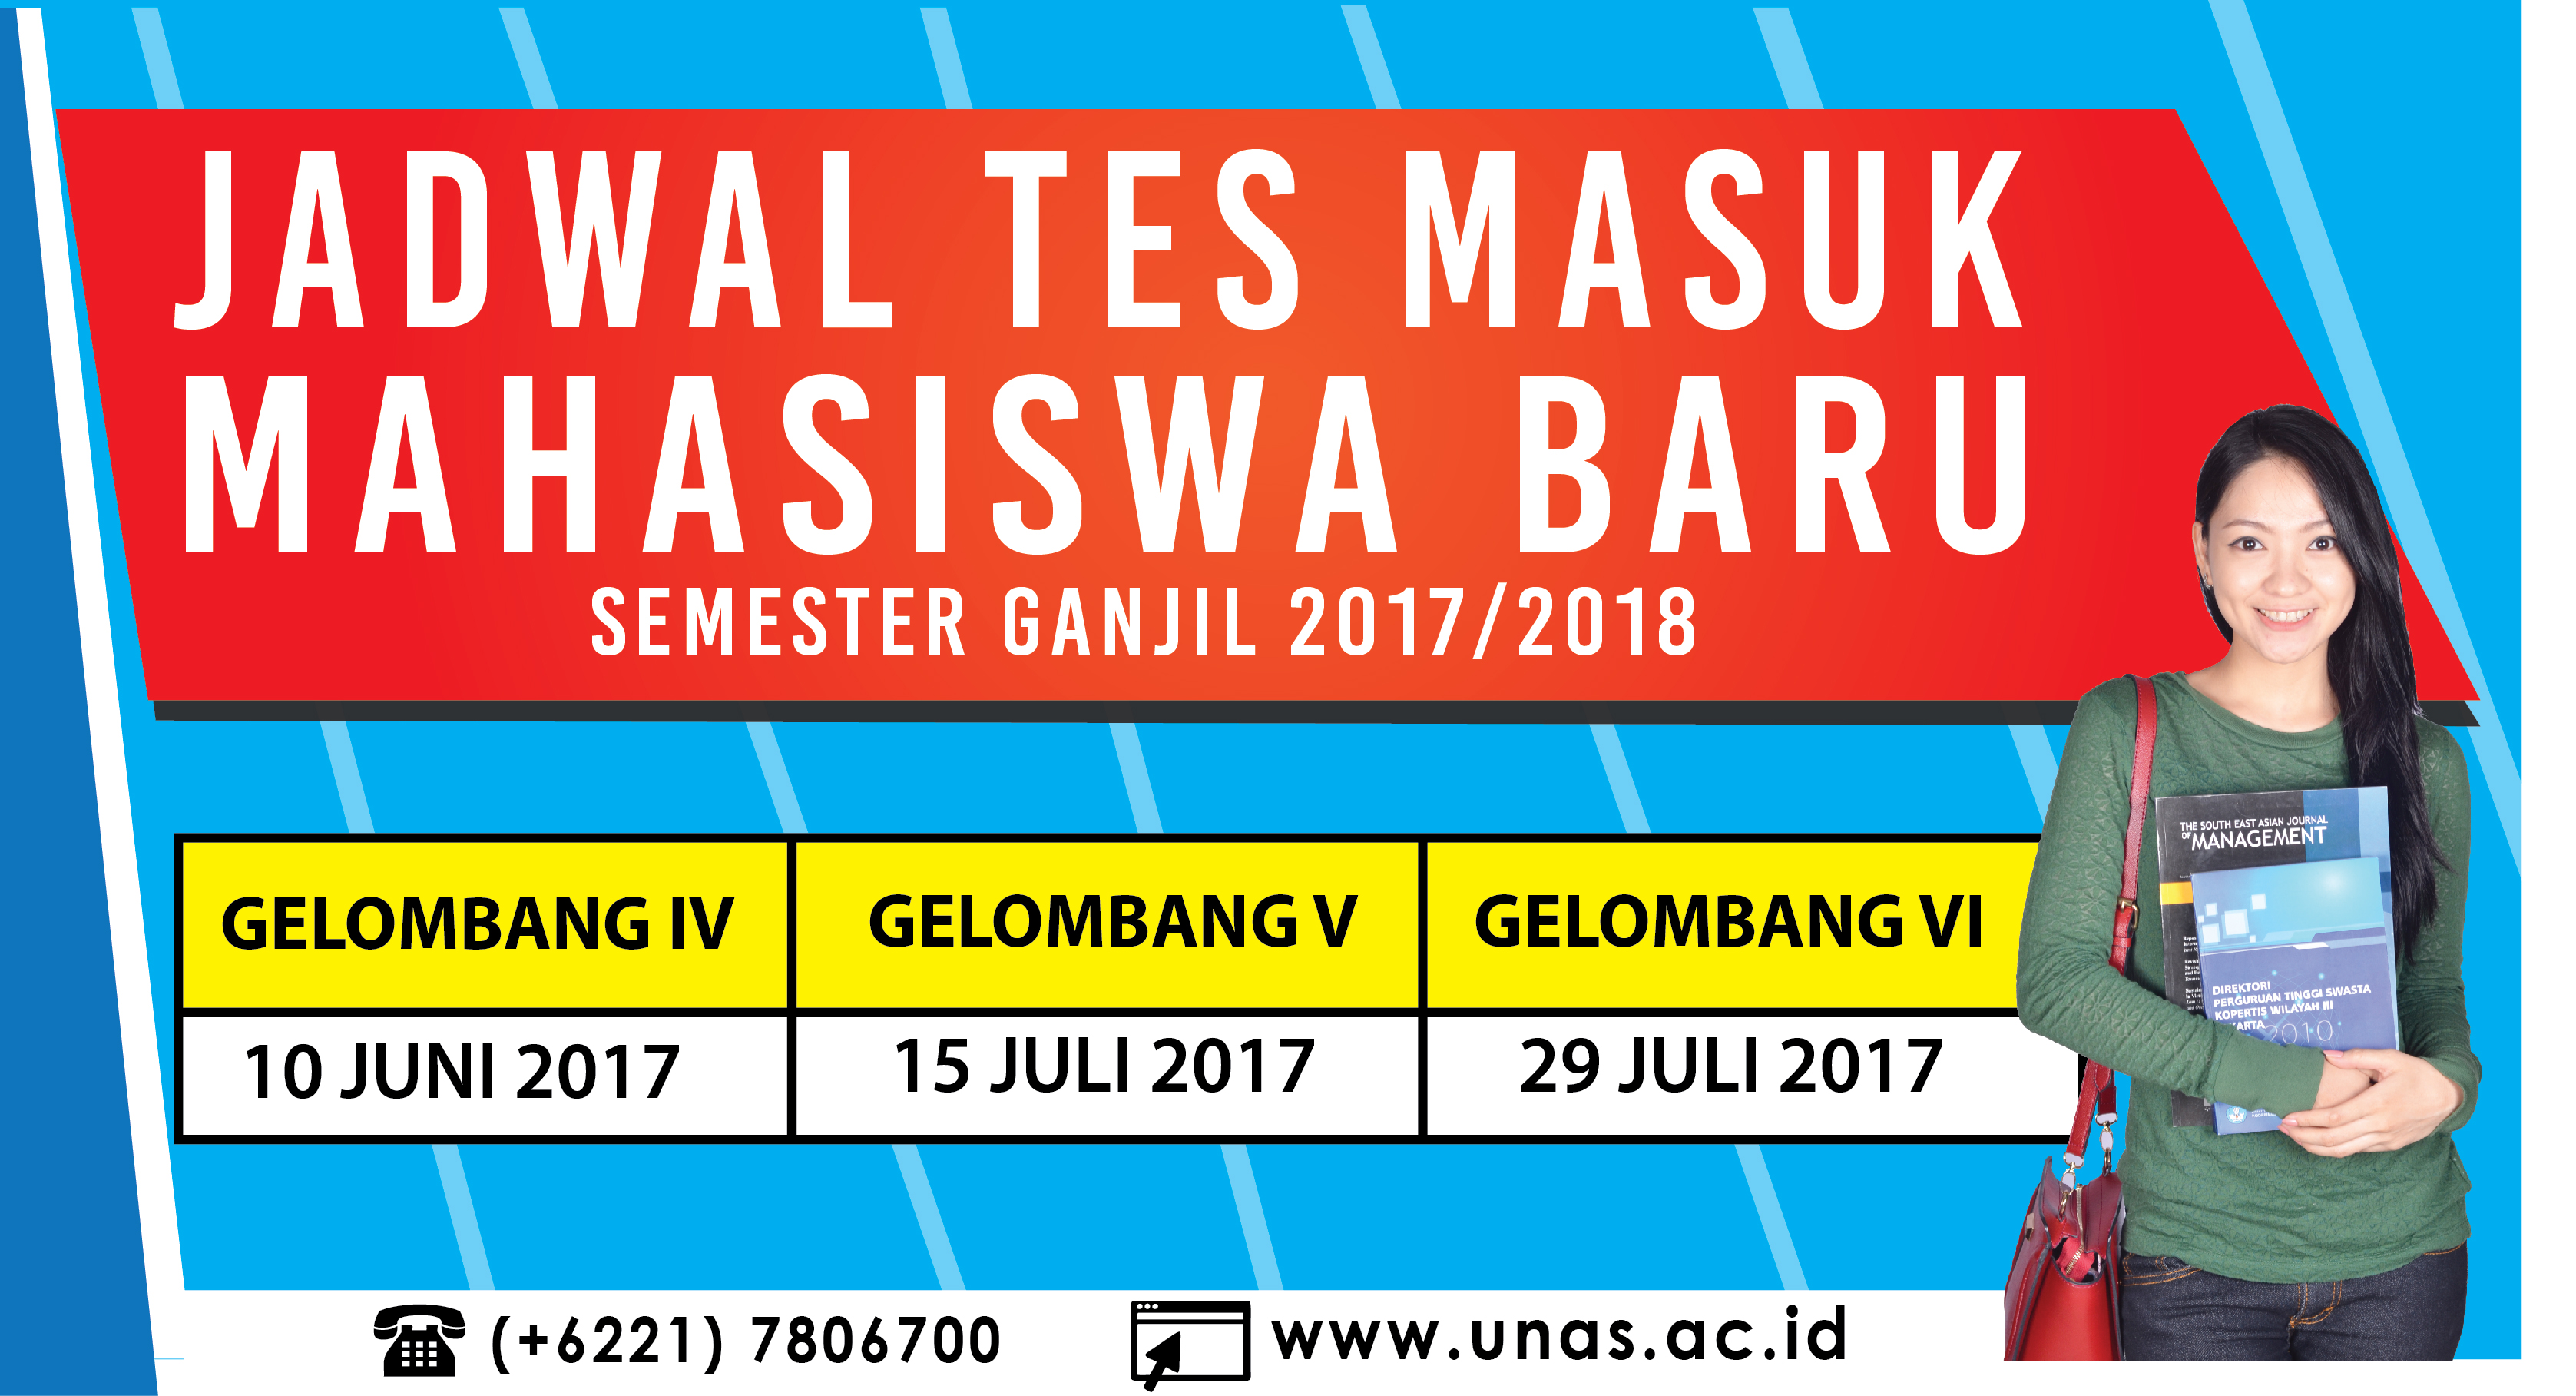 JADWAL TES MASUK MAHASISWA BARU SEMESTER GANJIL 2017 2018